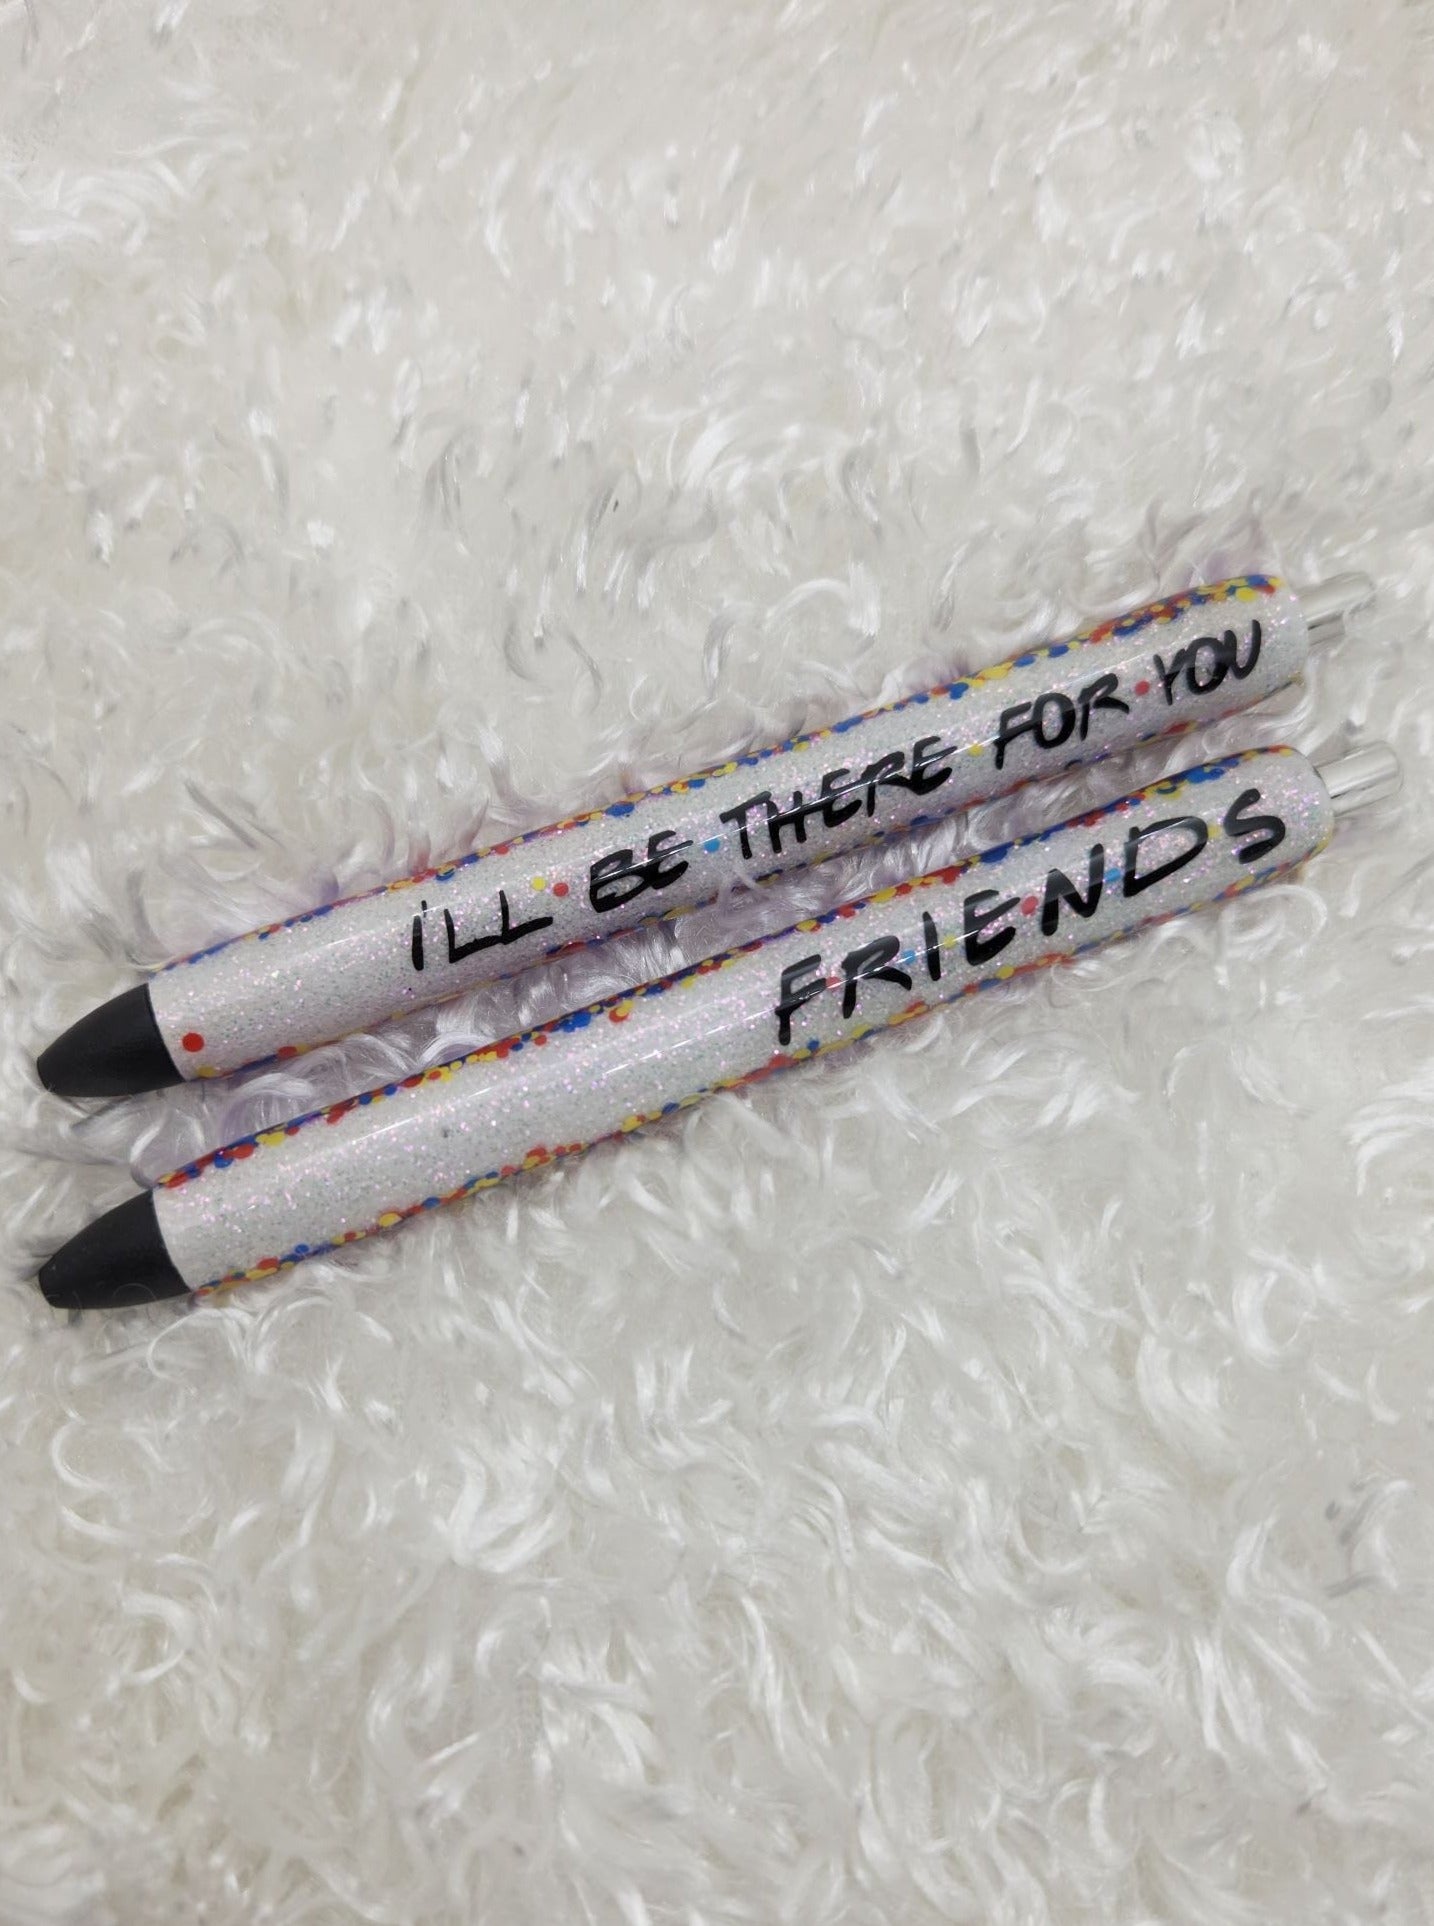 Friends pen